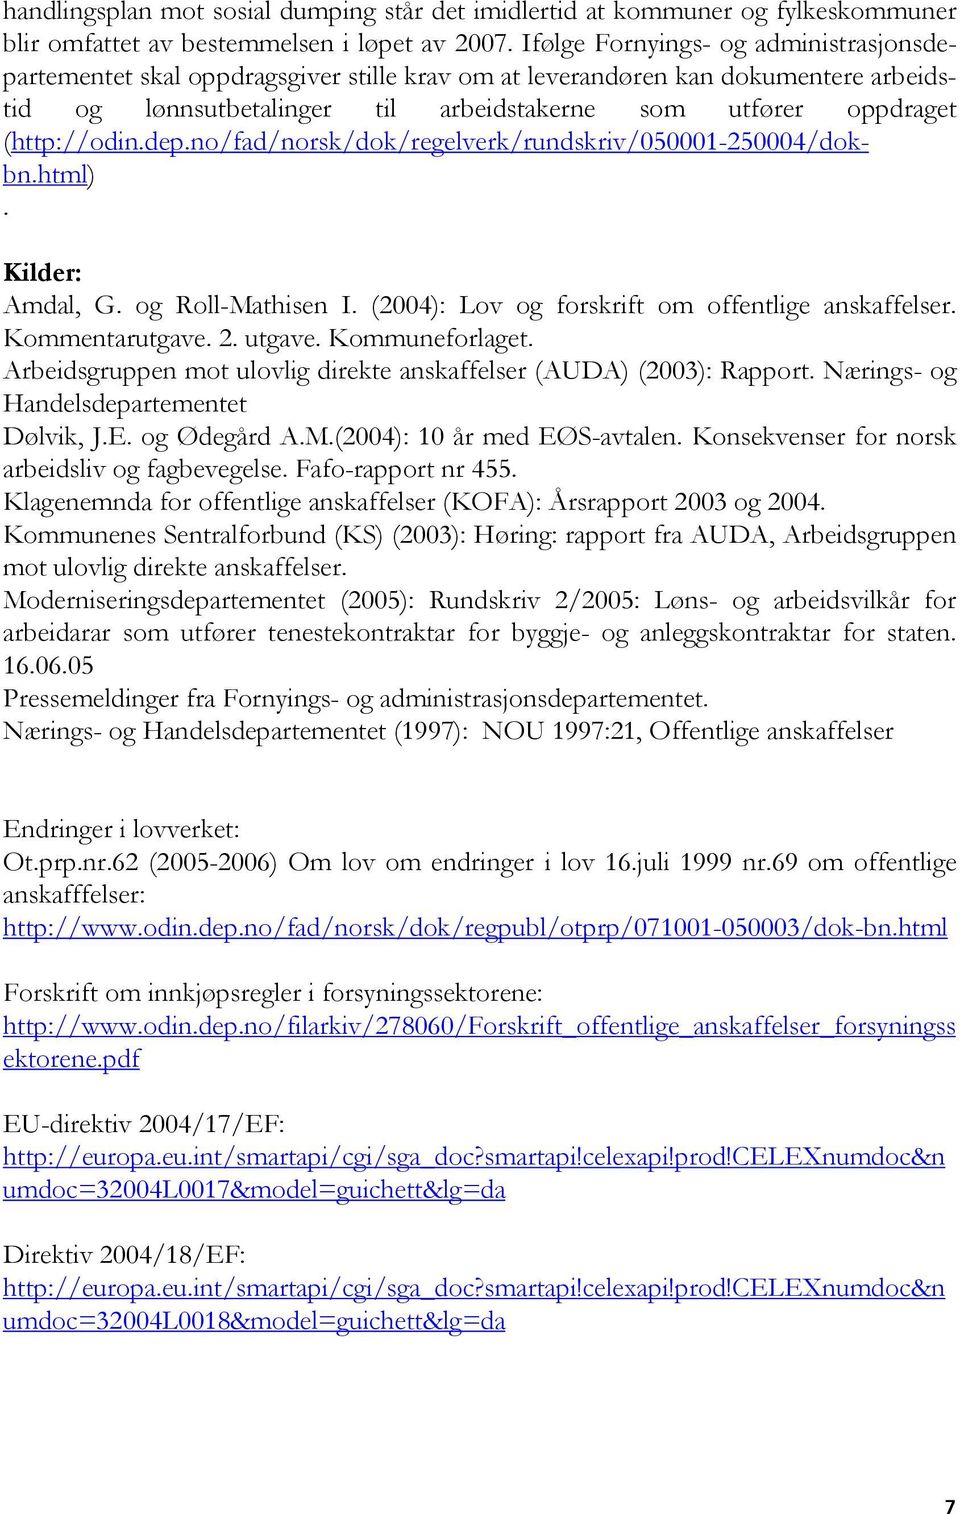 (http://odin.dep.no/fad/norsk/dok/regelverk/rundskriv/050001-250004/dokbn.html). Kilder: Amdal, G. og Roll-Mathisen I. (2004): Lov og forskrift om offentlige anskaffelser. Kommentarutgave. 2. utgave.